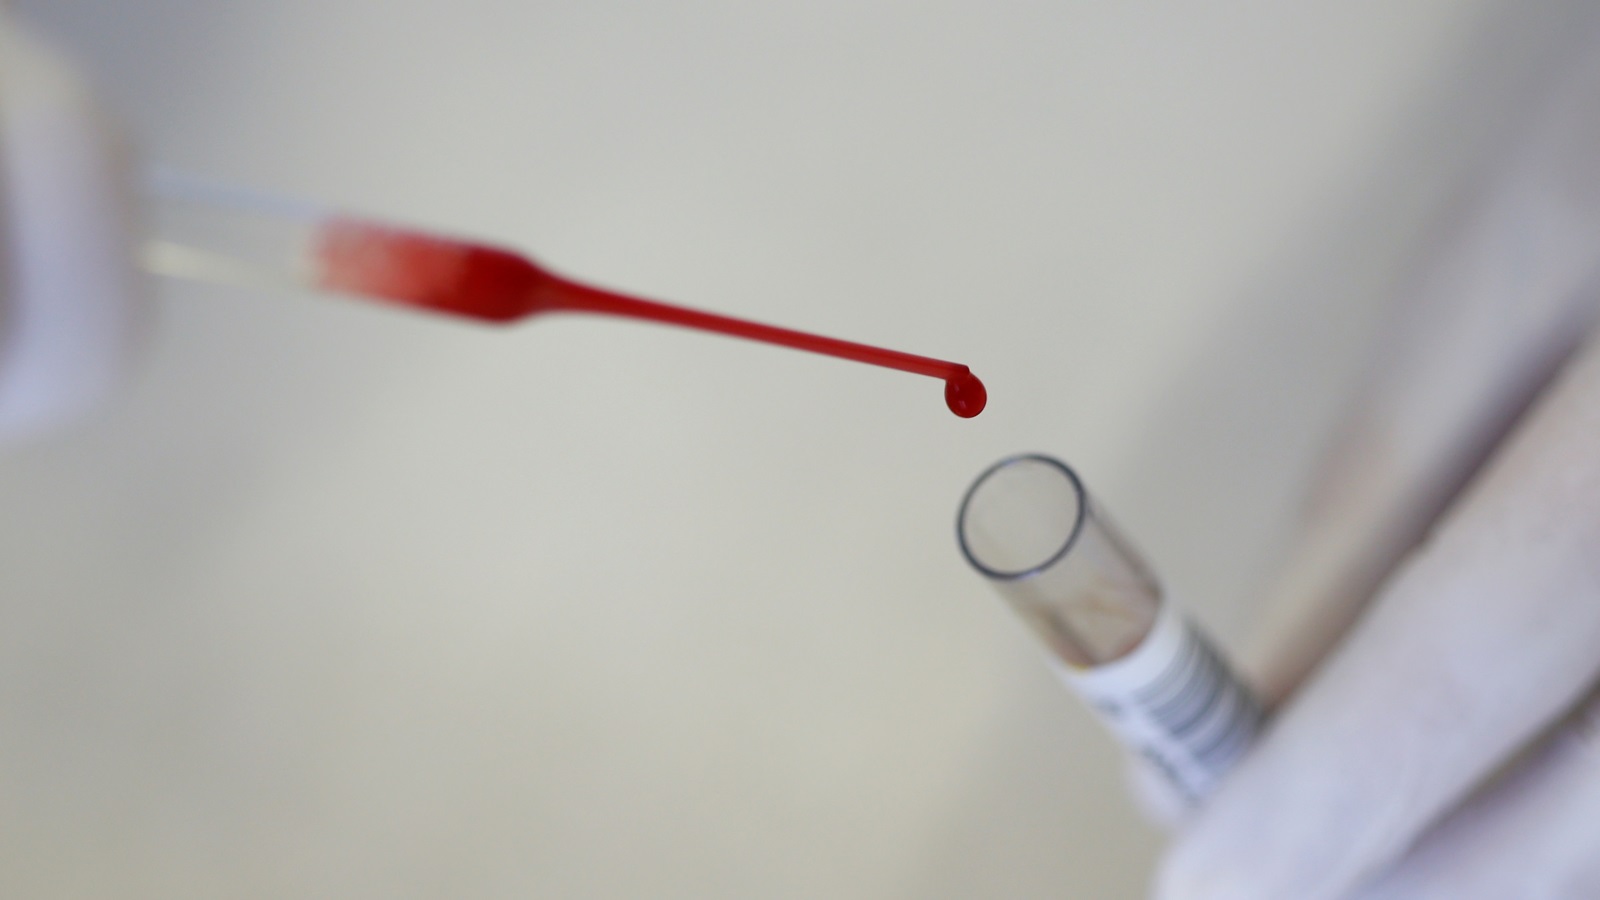 التكنولوجيا المستخدمة لقياس نسبة التروبونين في الدم أصبحت متطورة (رويترز)